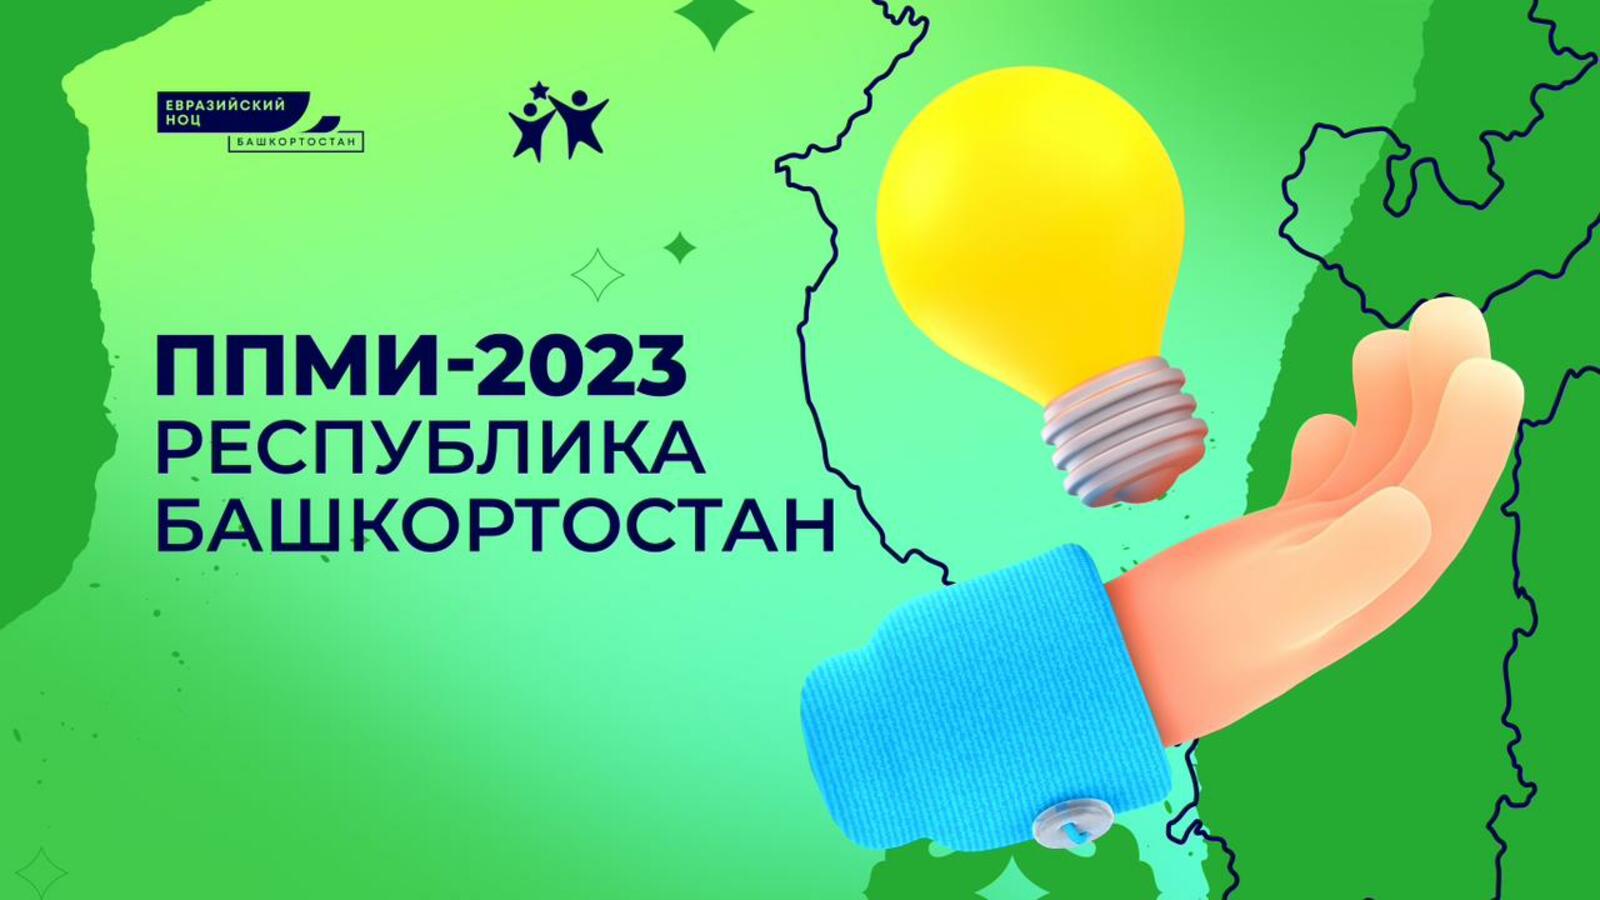 Проекты, реализованные в рамках ППМИ-2023, смогут получить до 1,2 млн рублей из бюджета республики